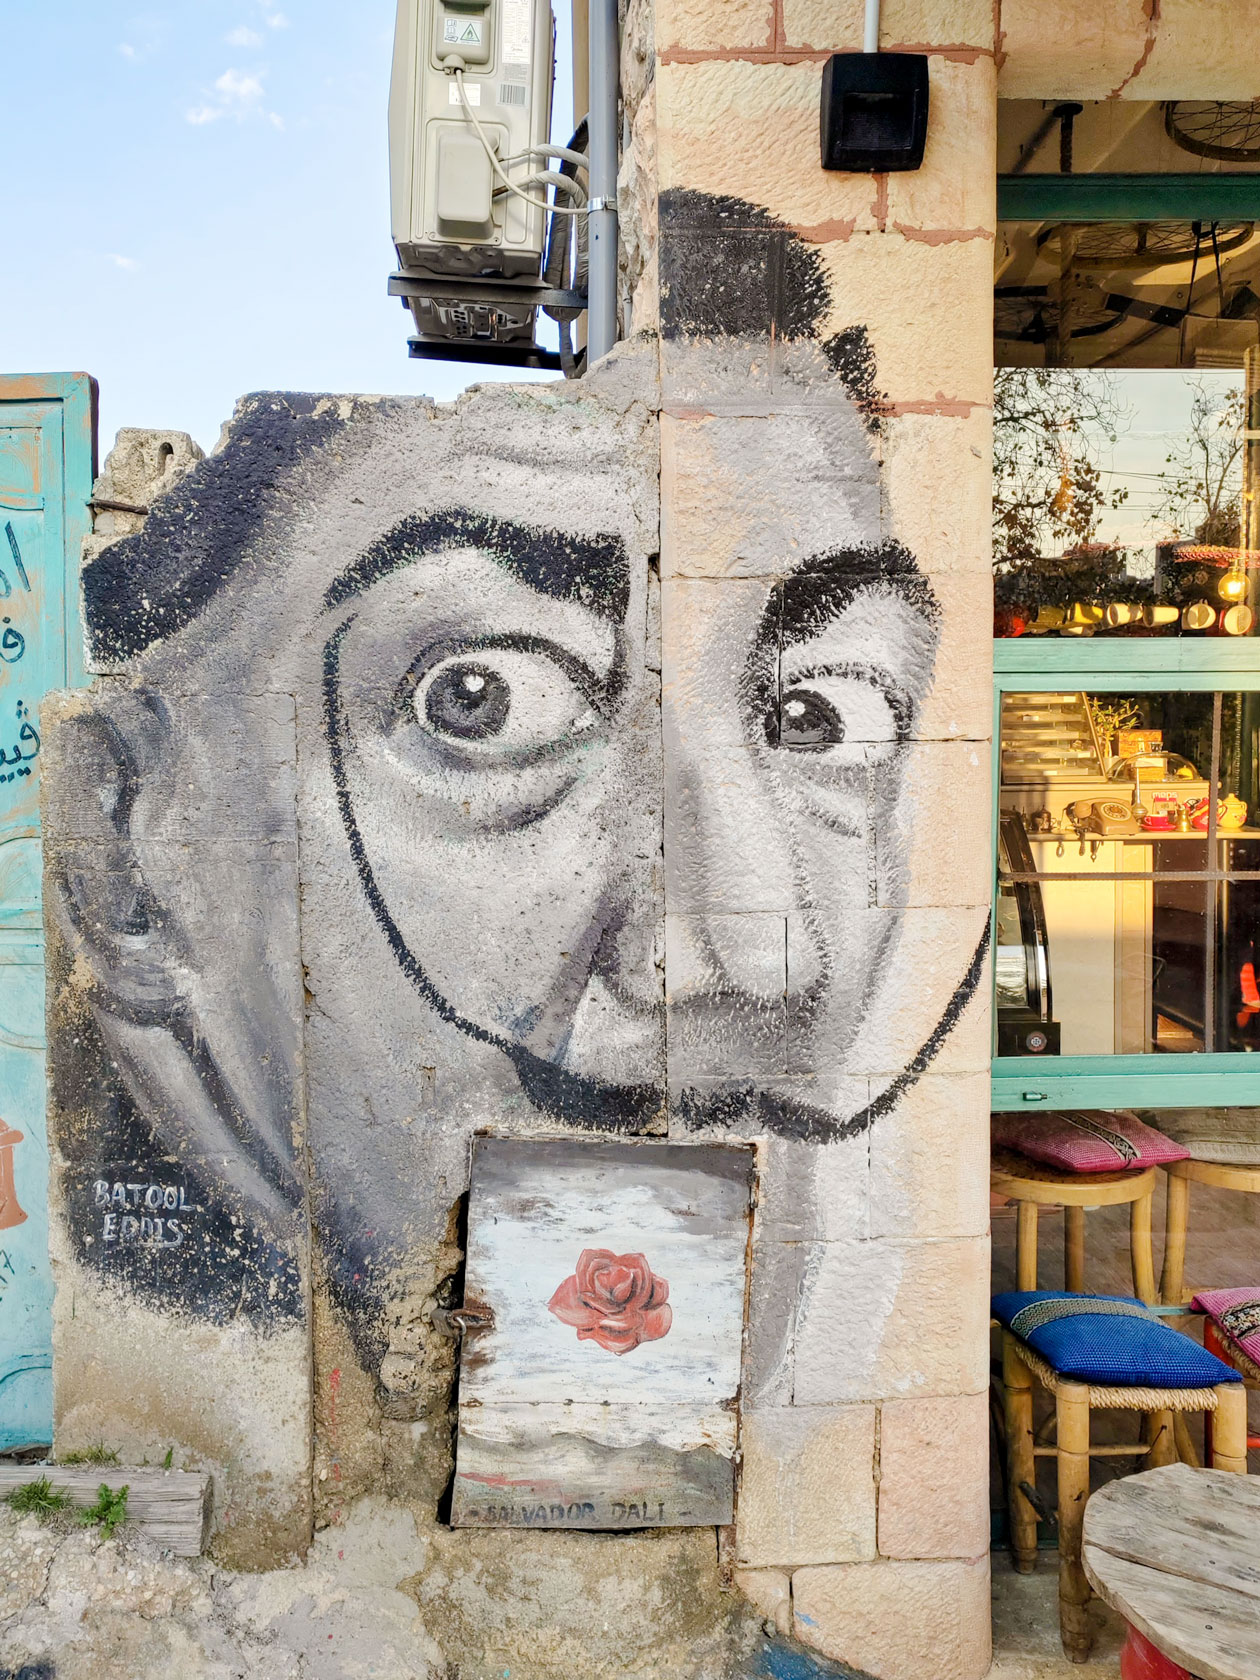 Прогуливаясь по столице Иордании, я встретила много интересных граффити